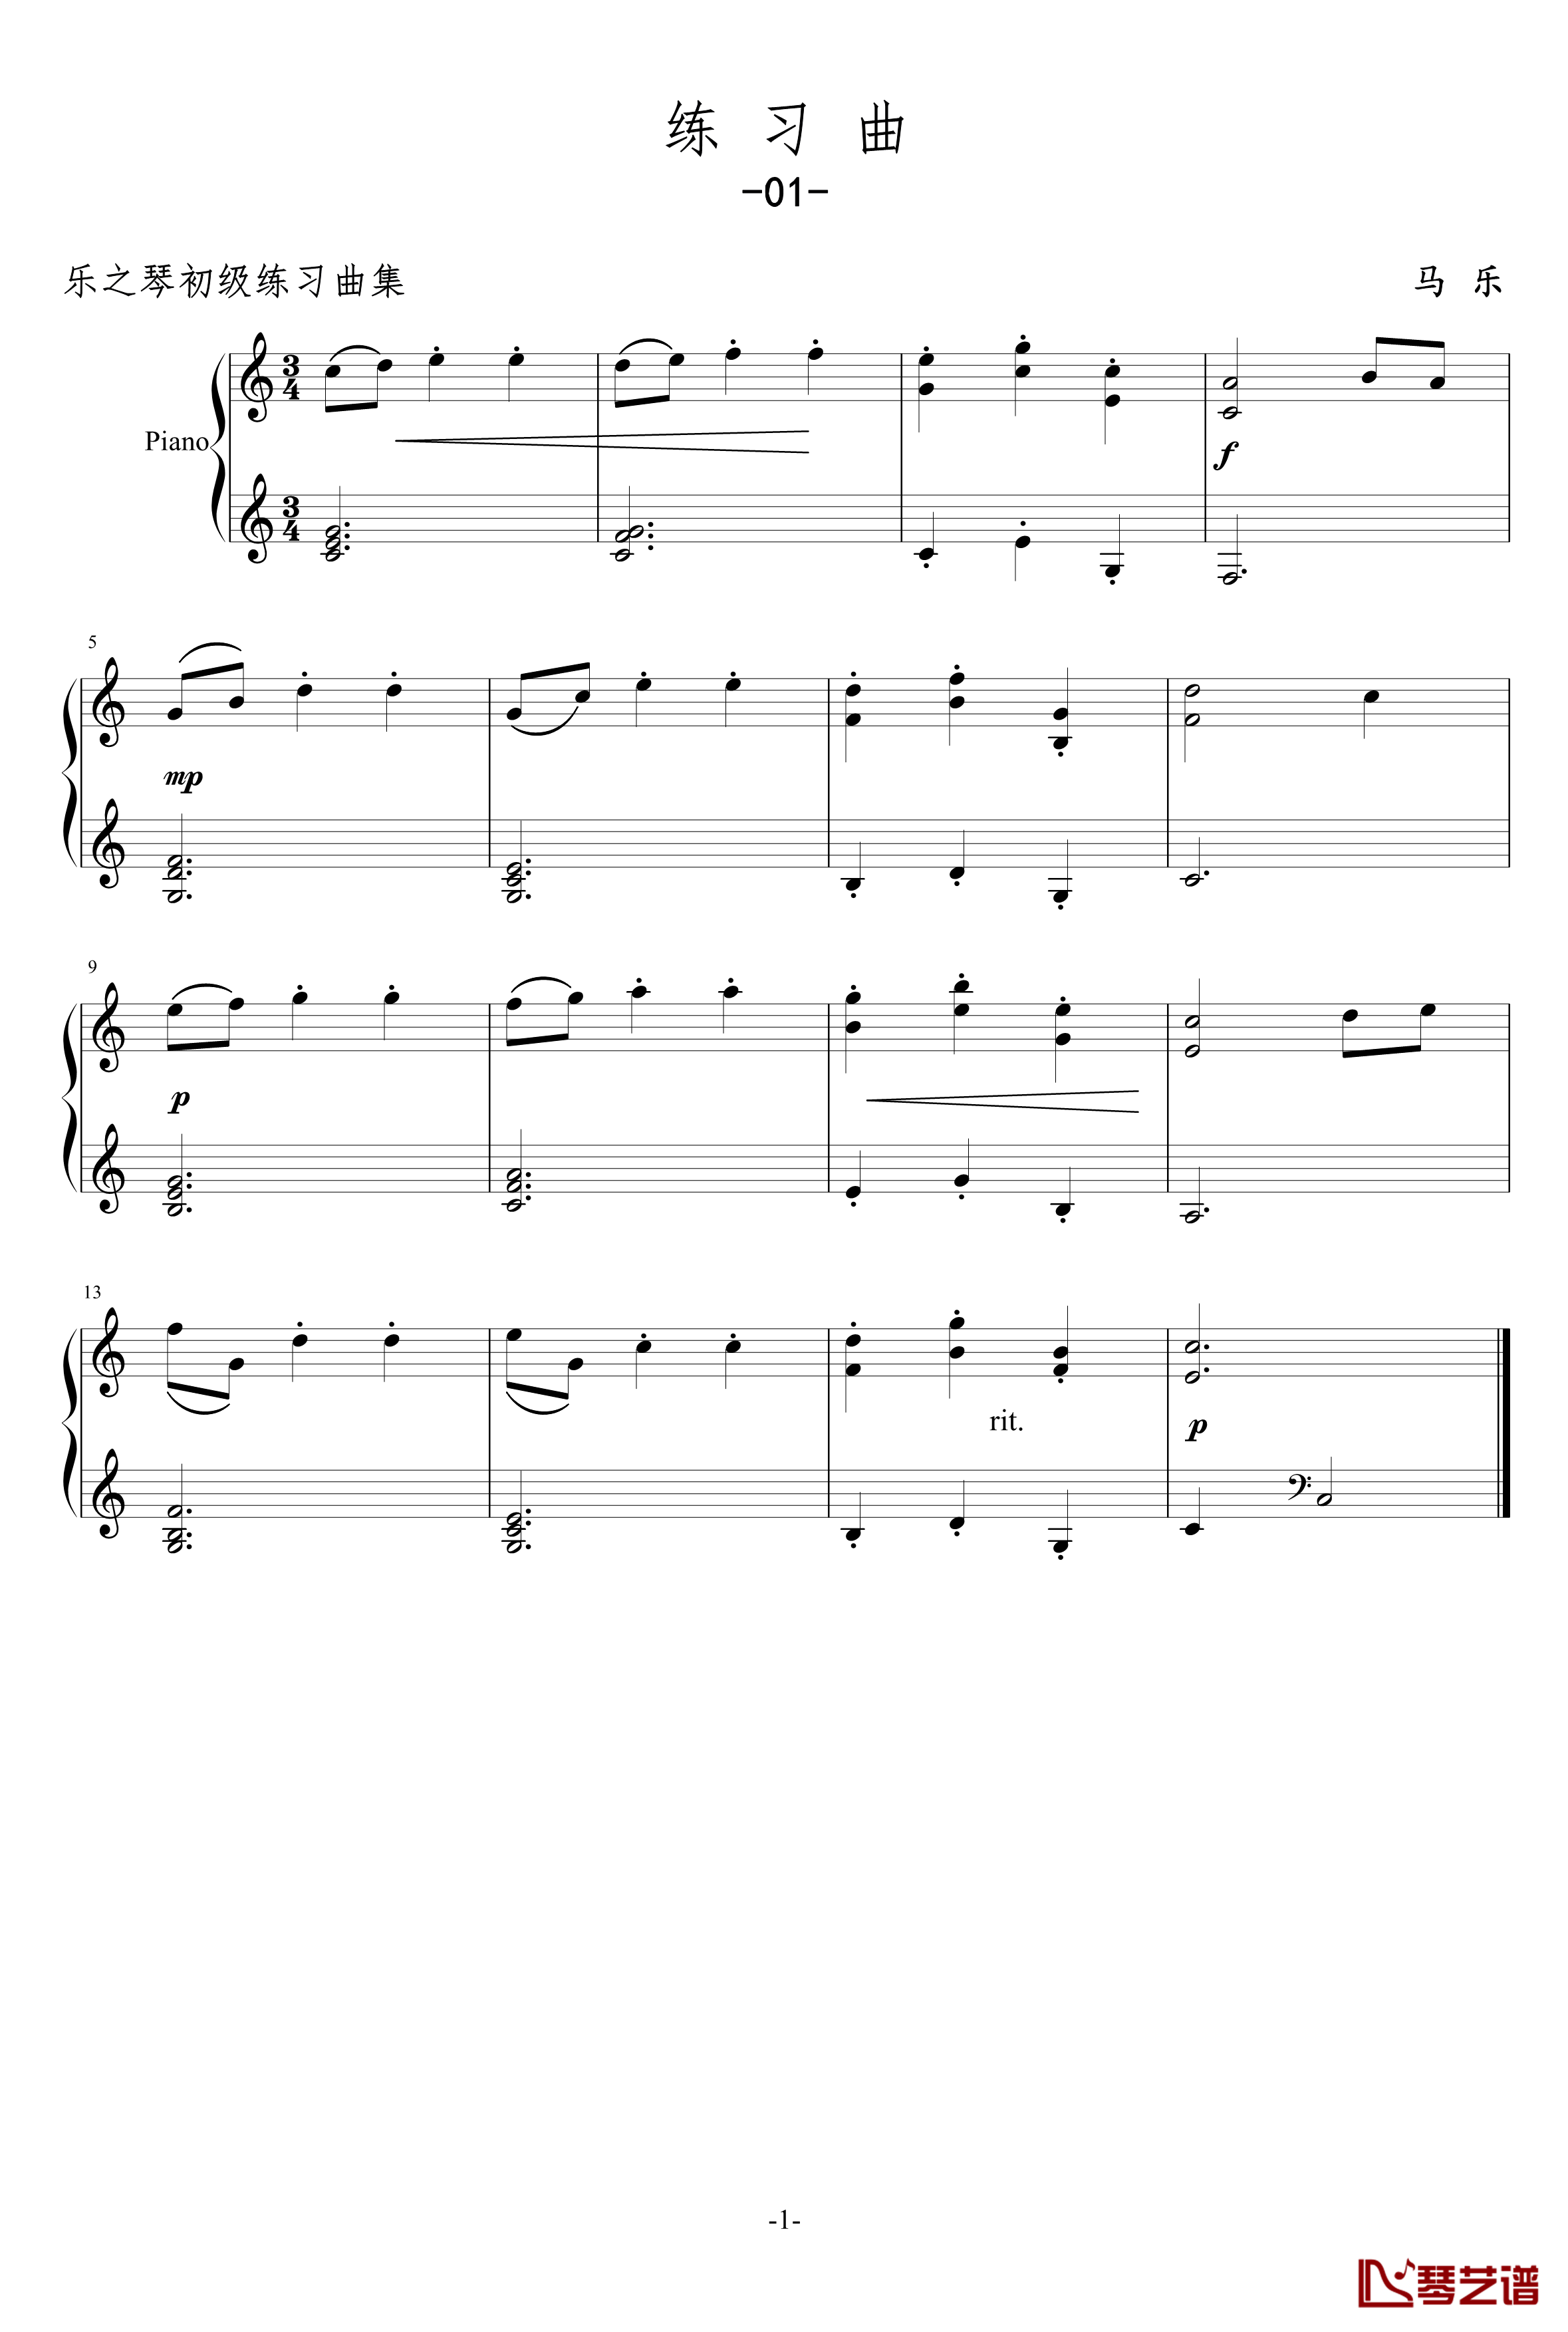 练习曲01钢琴谱-乐之琴1